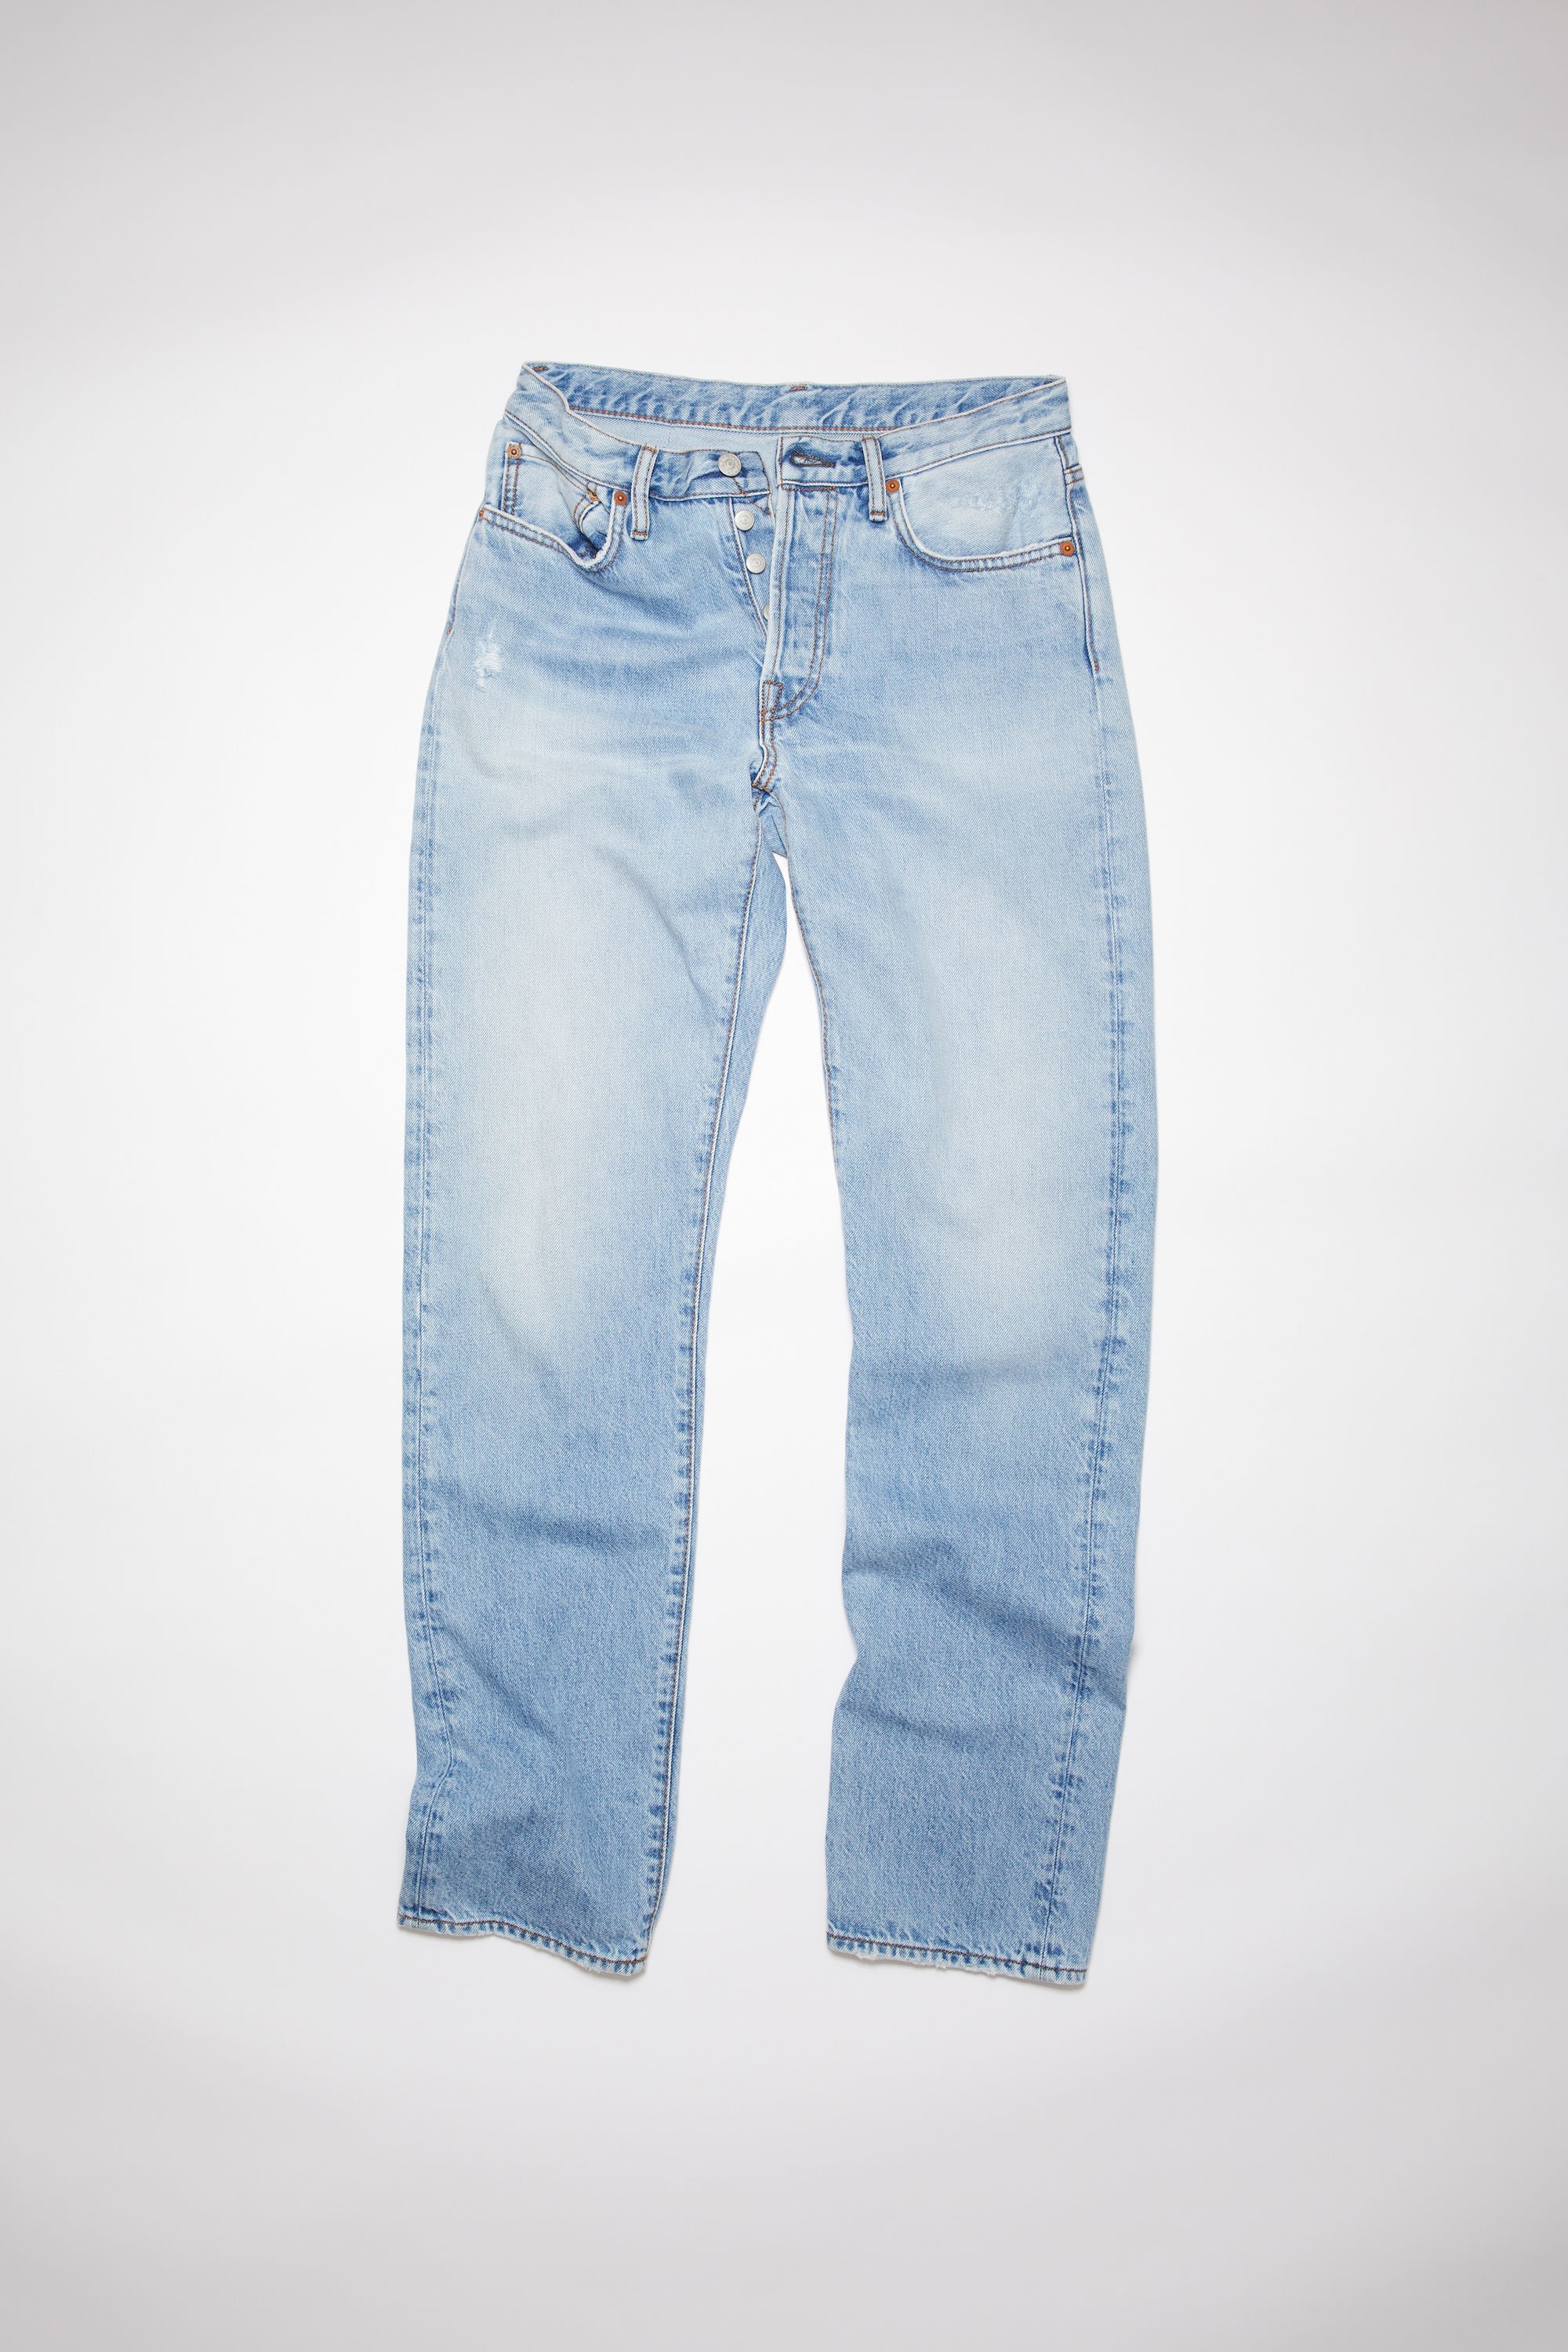 Regular fit jeans - 1997 - Light blue - 1